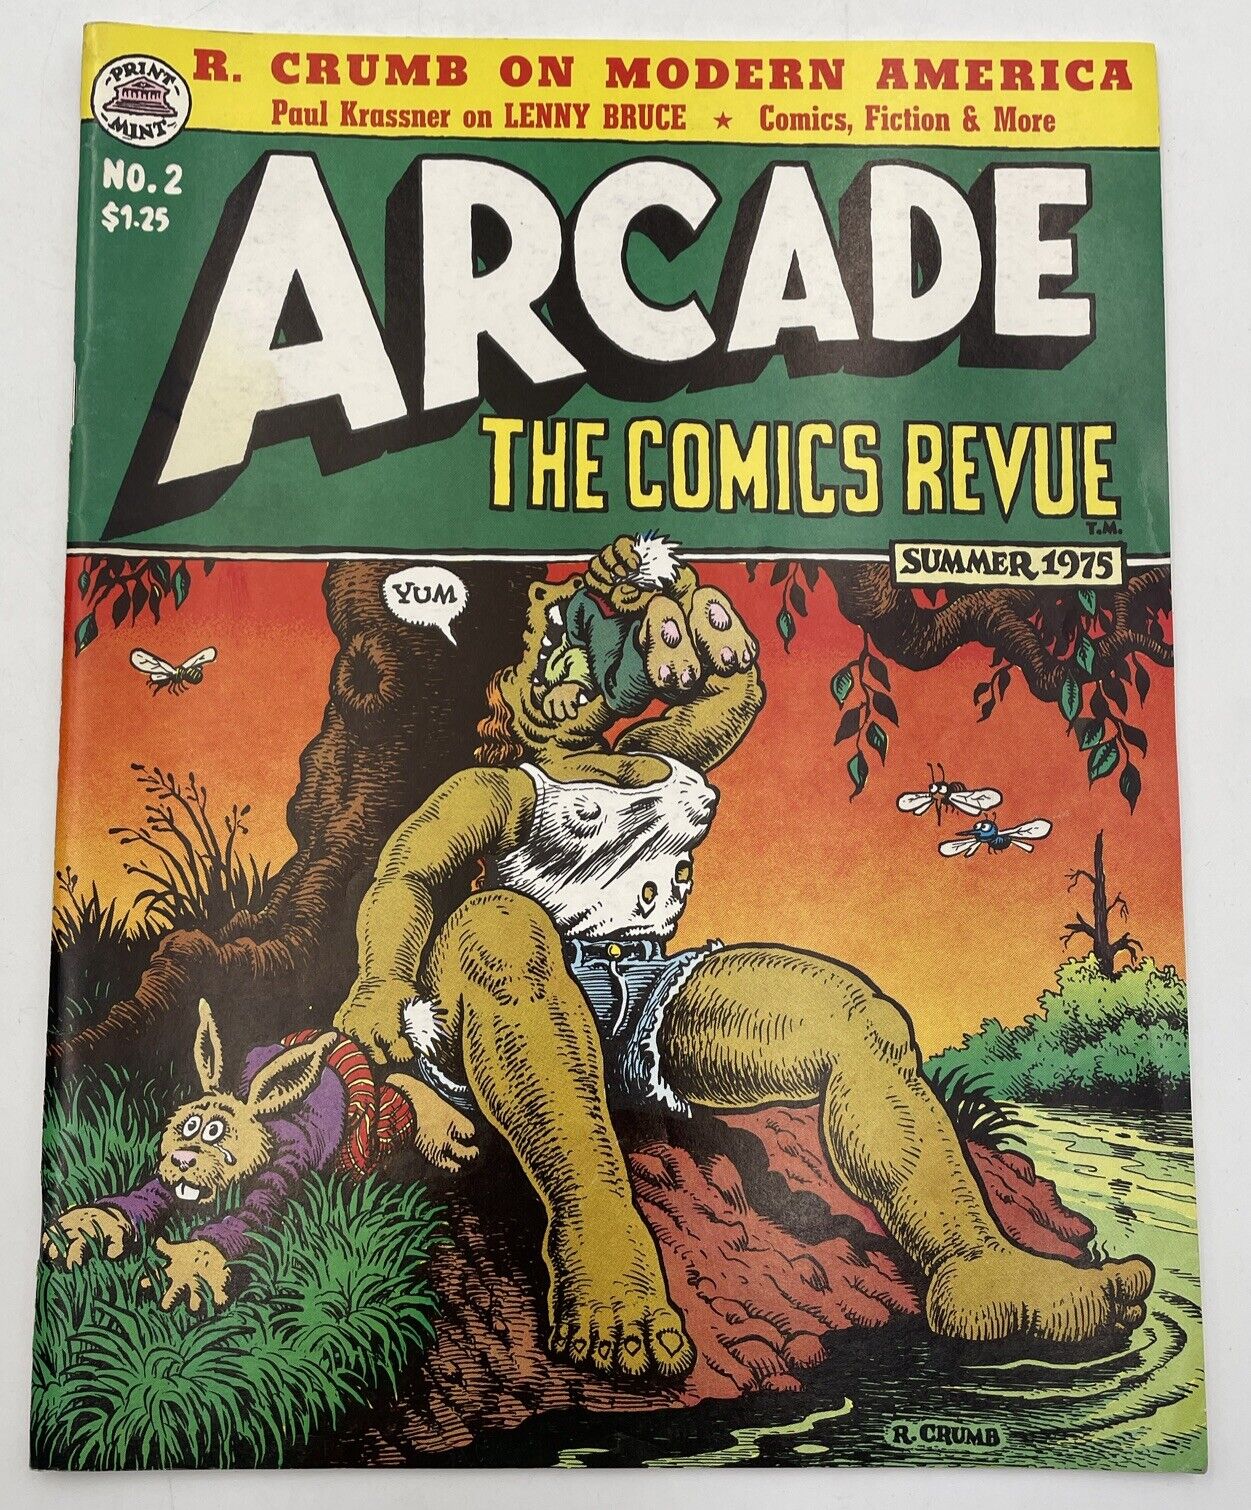 Arcade The Comics Revue Summer 1975 Vol 1, No 2 Vintage Robert Crumb Book